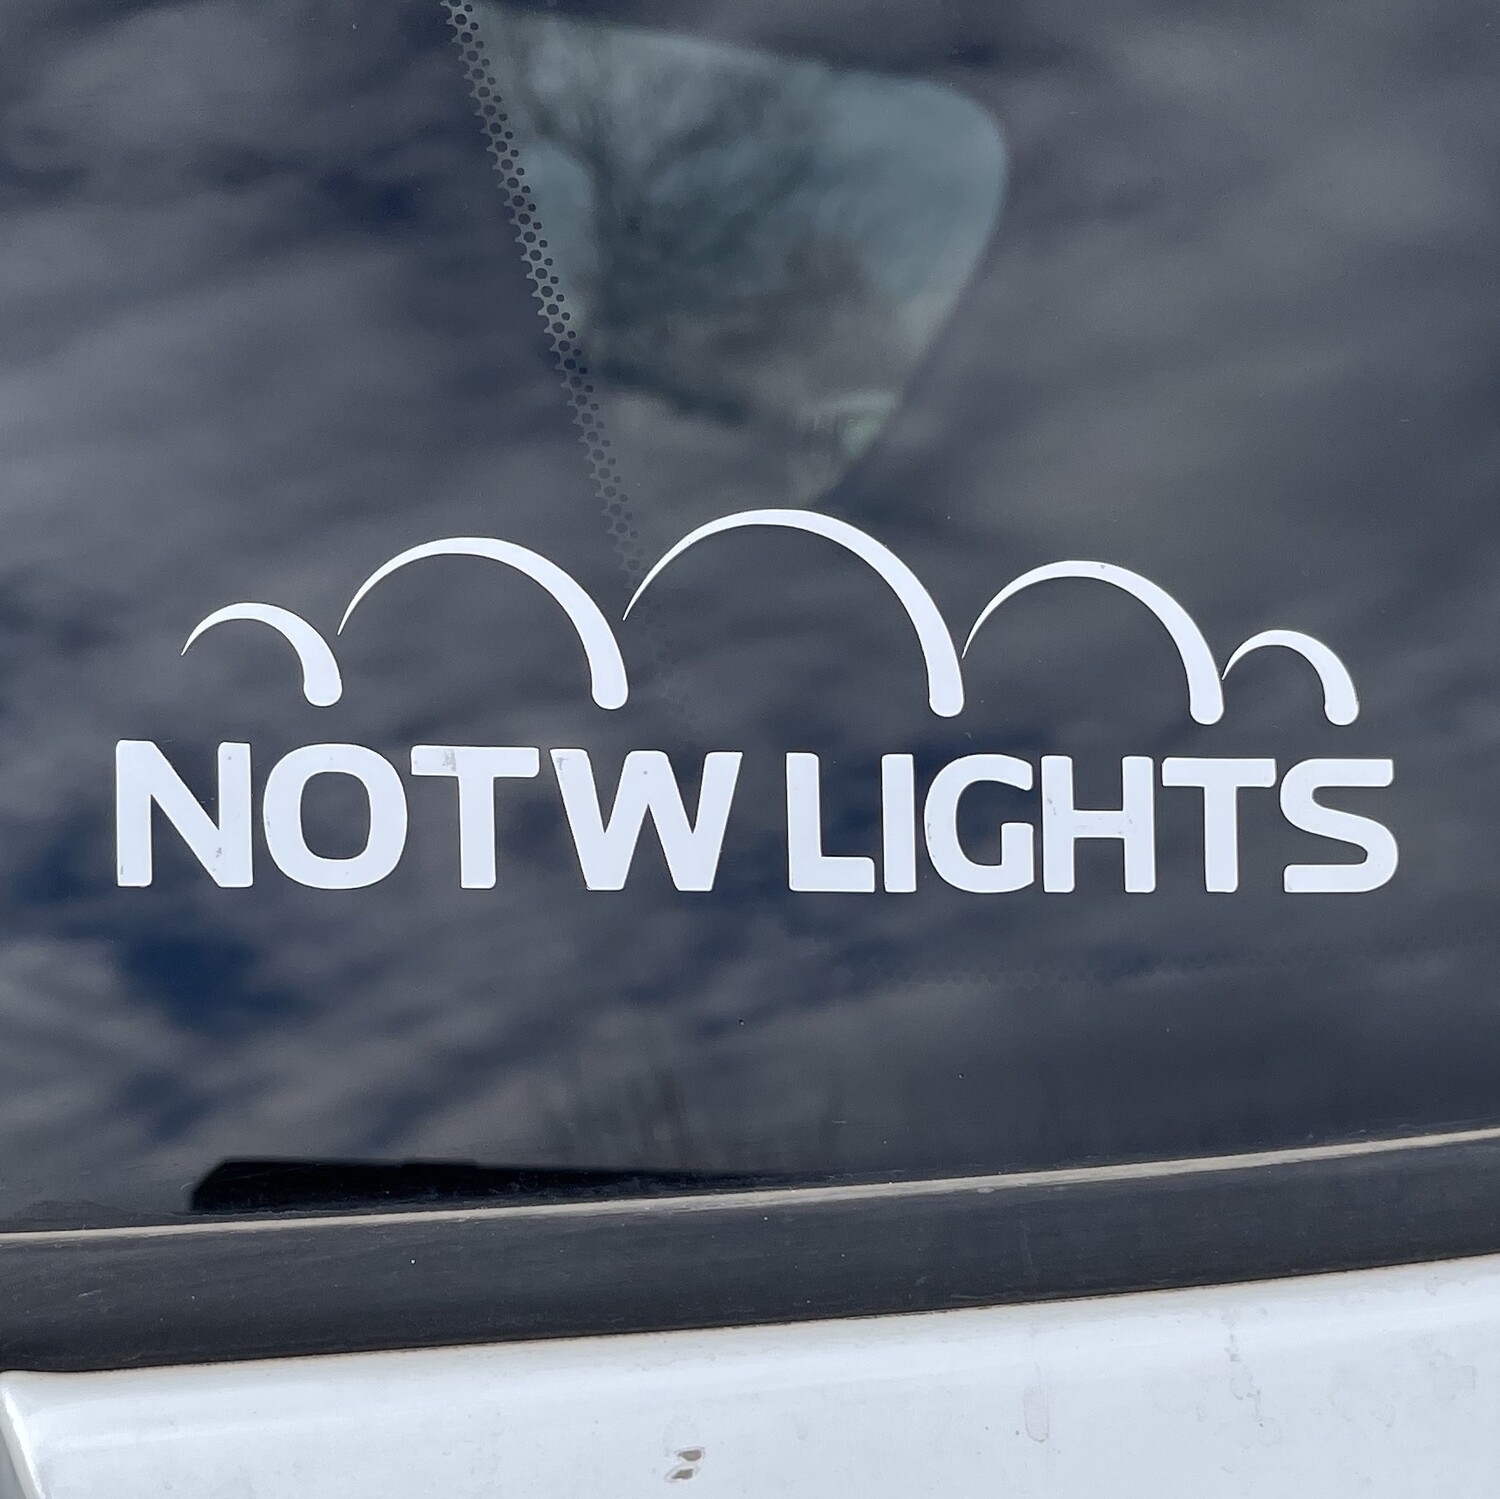 NOTW Lights 5" Window Decals - 2 pack